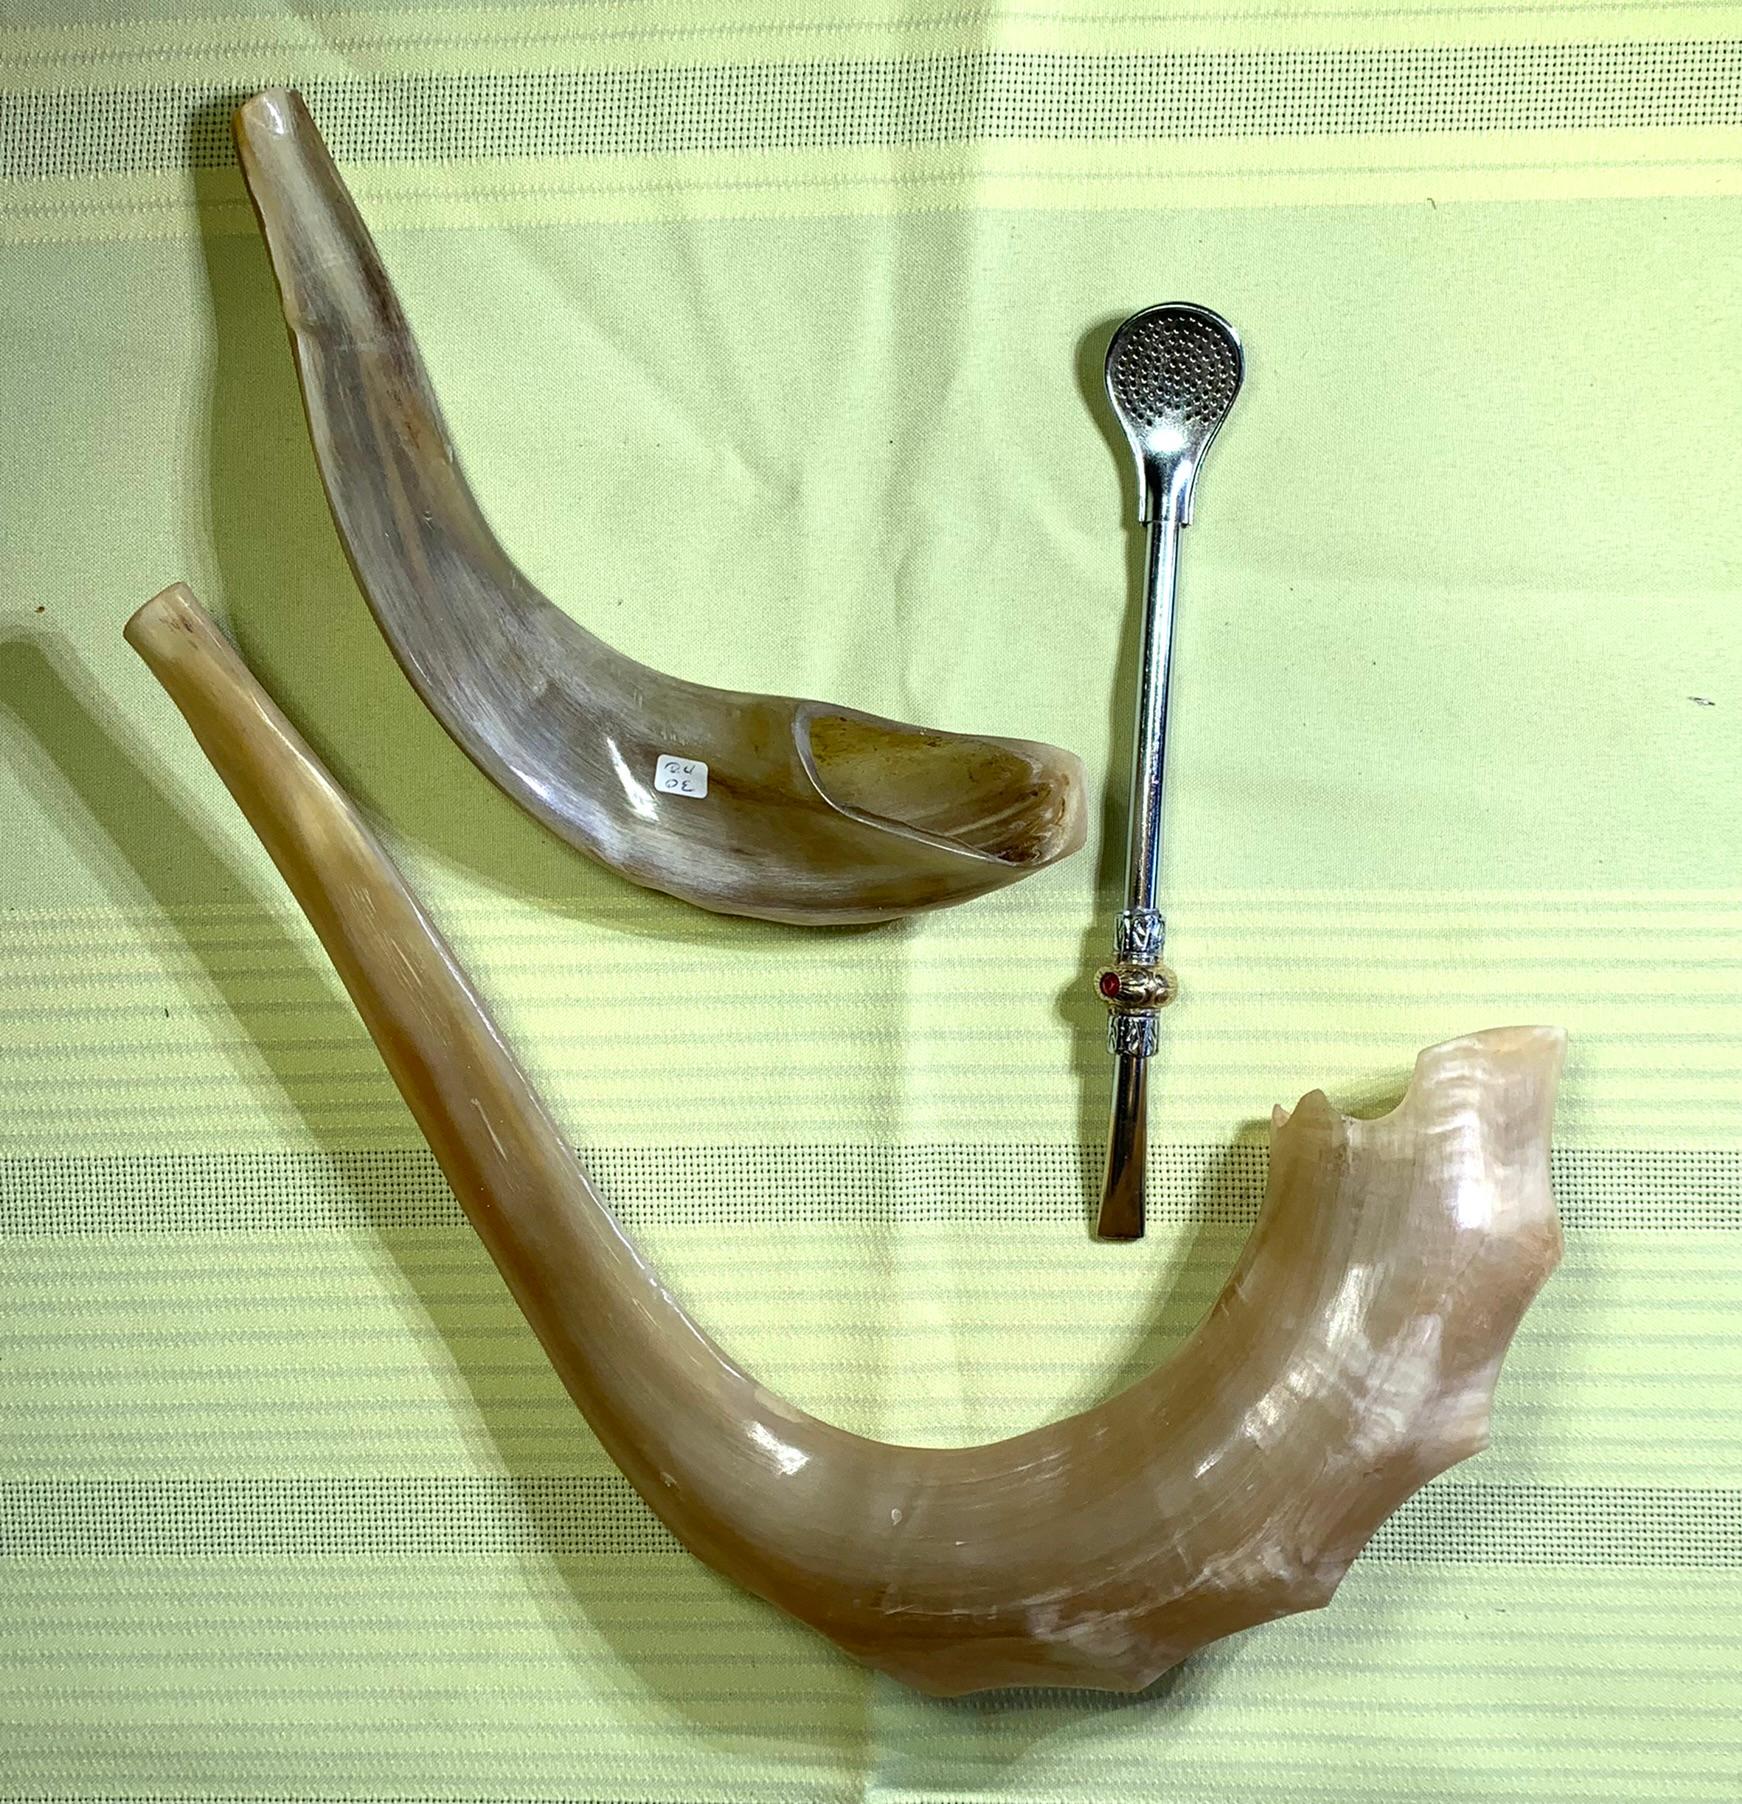 2 Shofar Horns & Jewish Religious Item